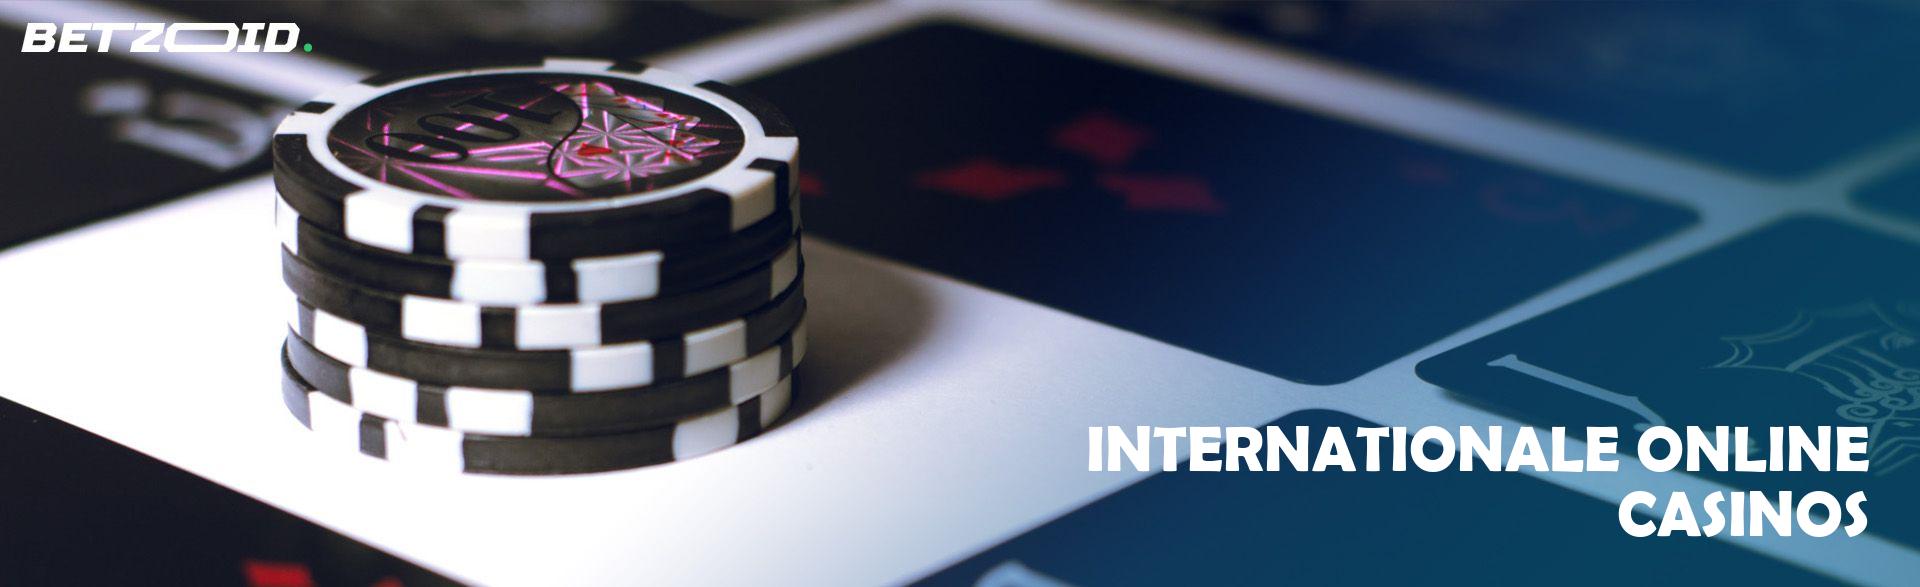 Internationale Online Casinos.